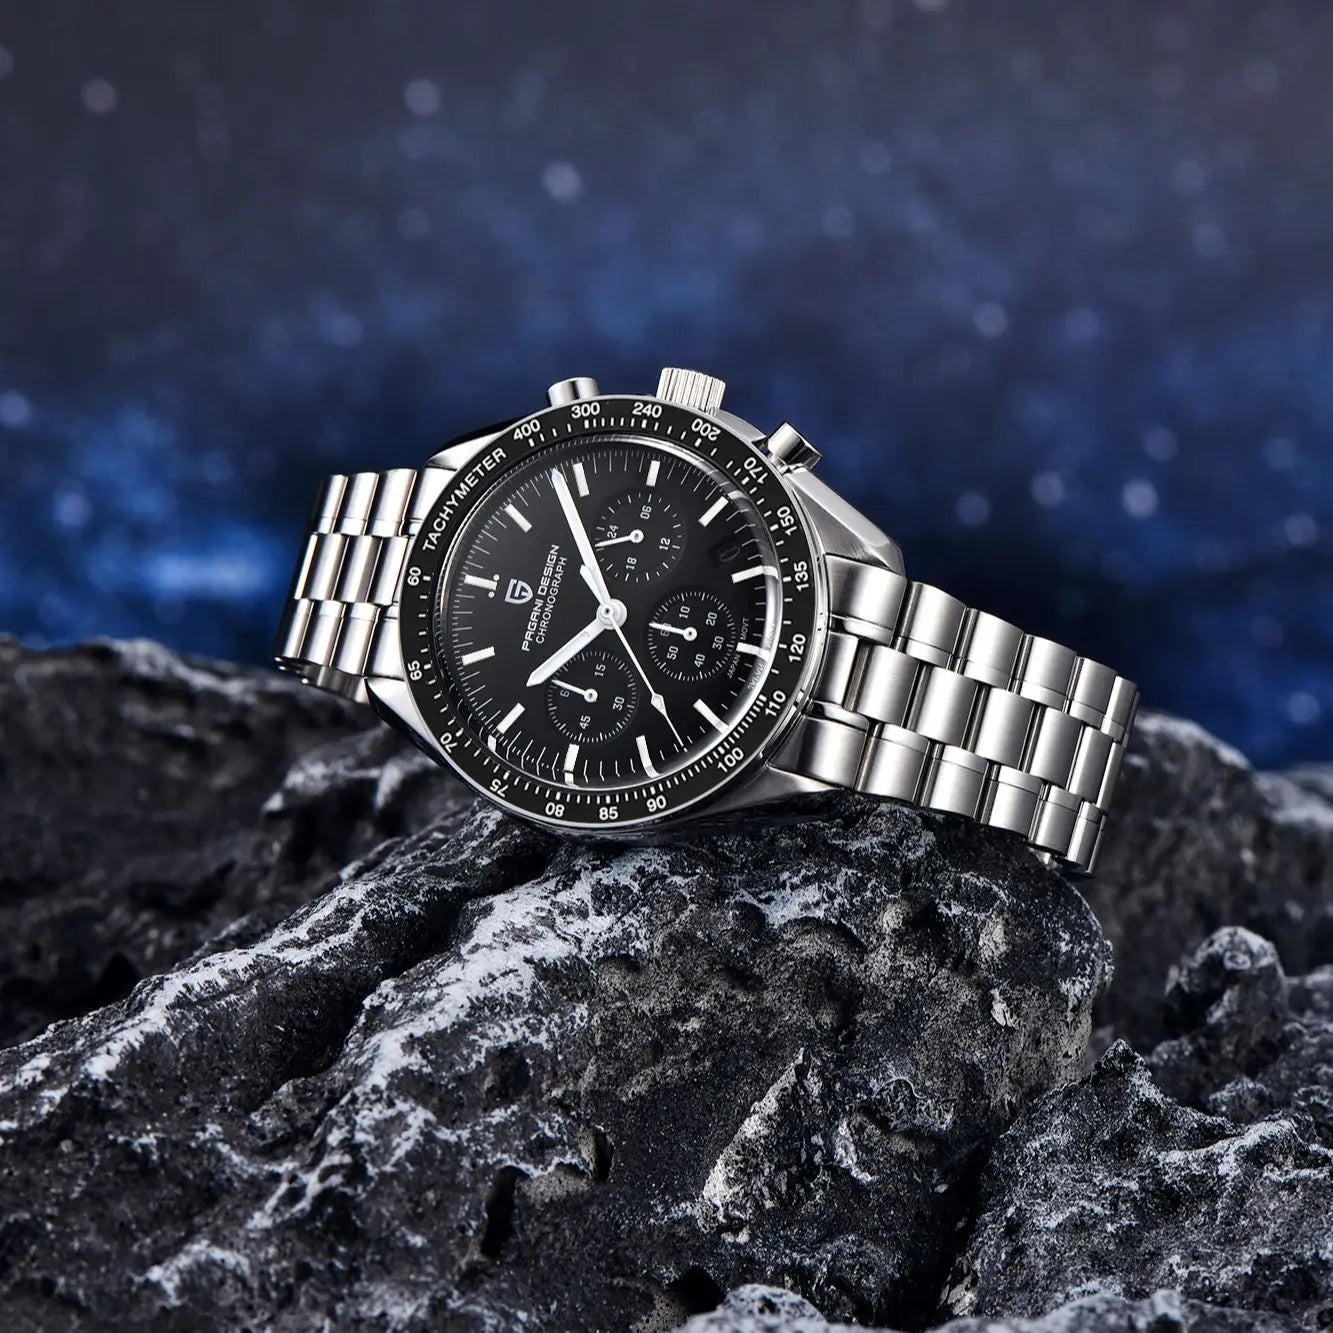 PAGANI DESIGN 2023 New Men's Watches Top Luxury Quartz Watch